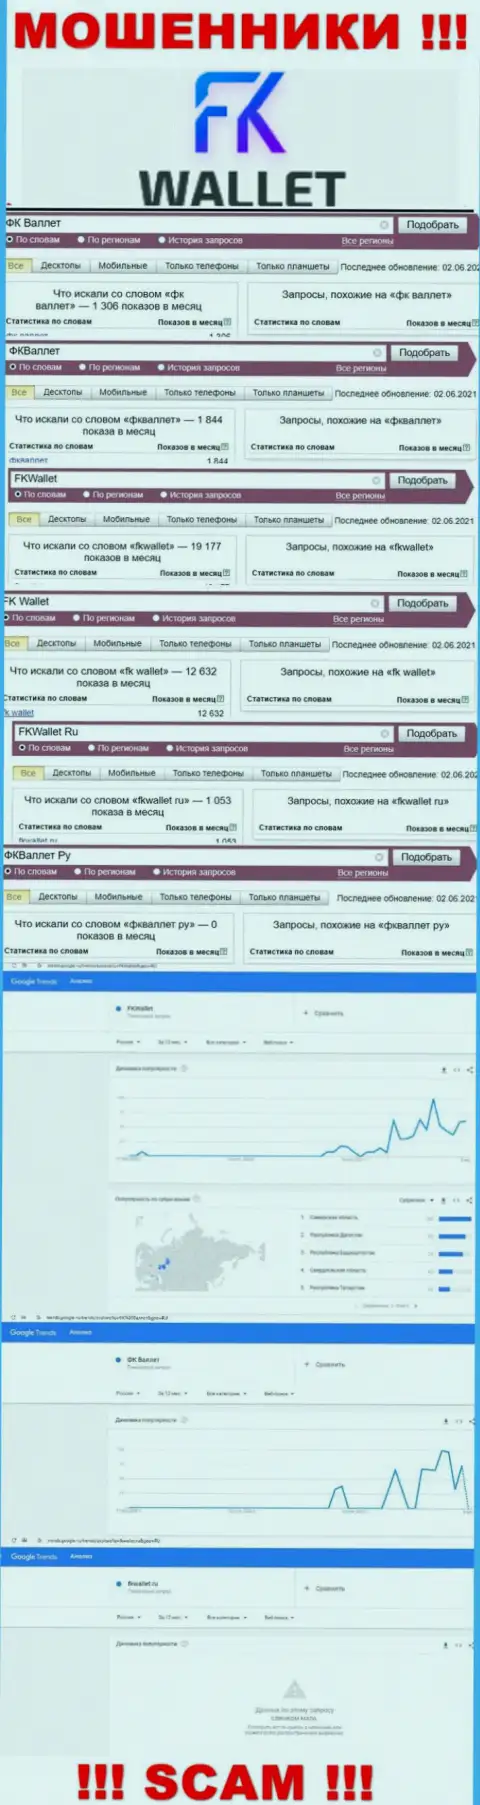 Скриншот статистики онлайн-запросов по незаконно действующей организации FKWallet